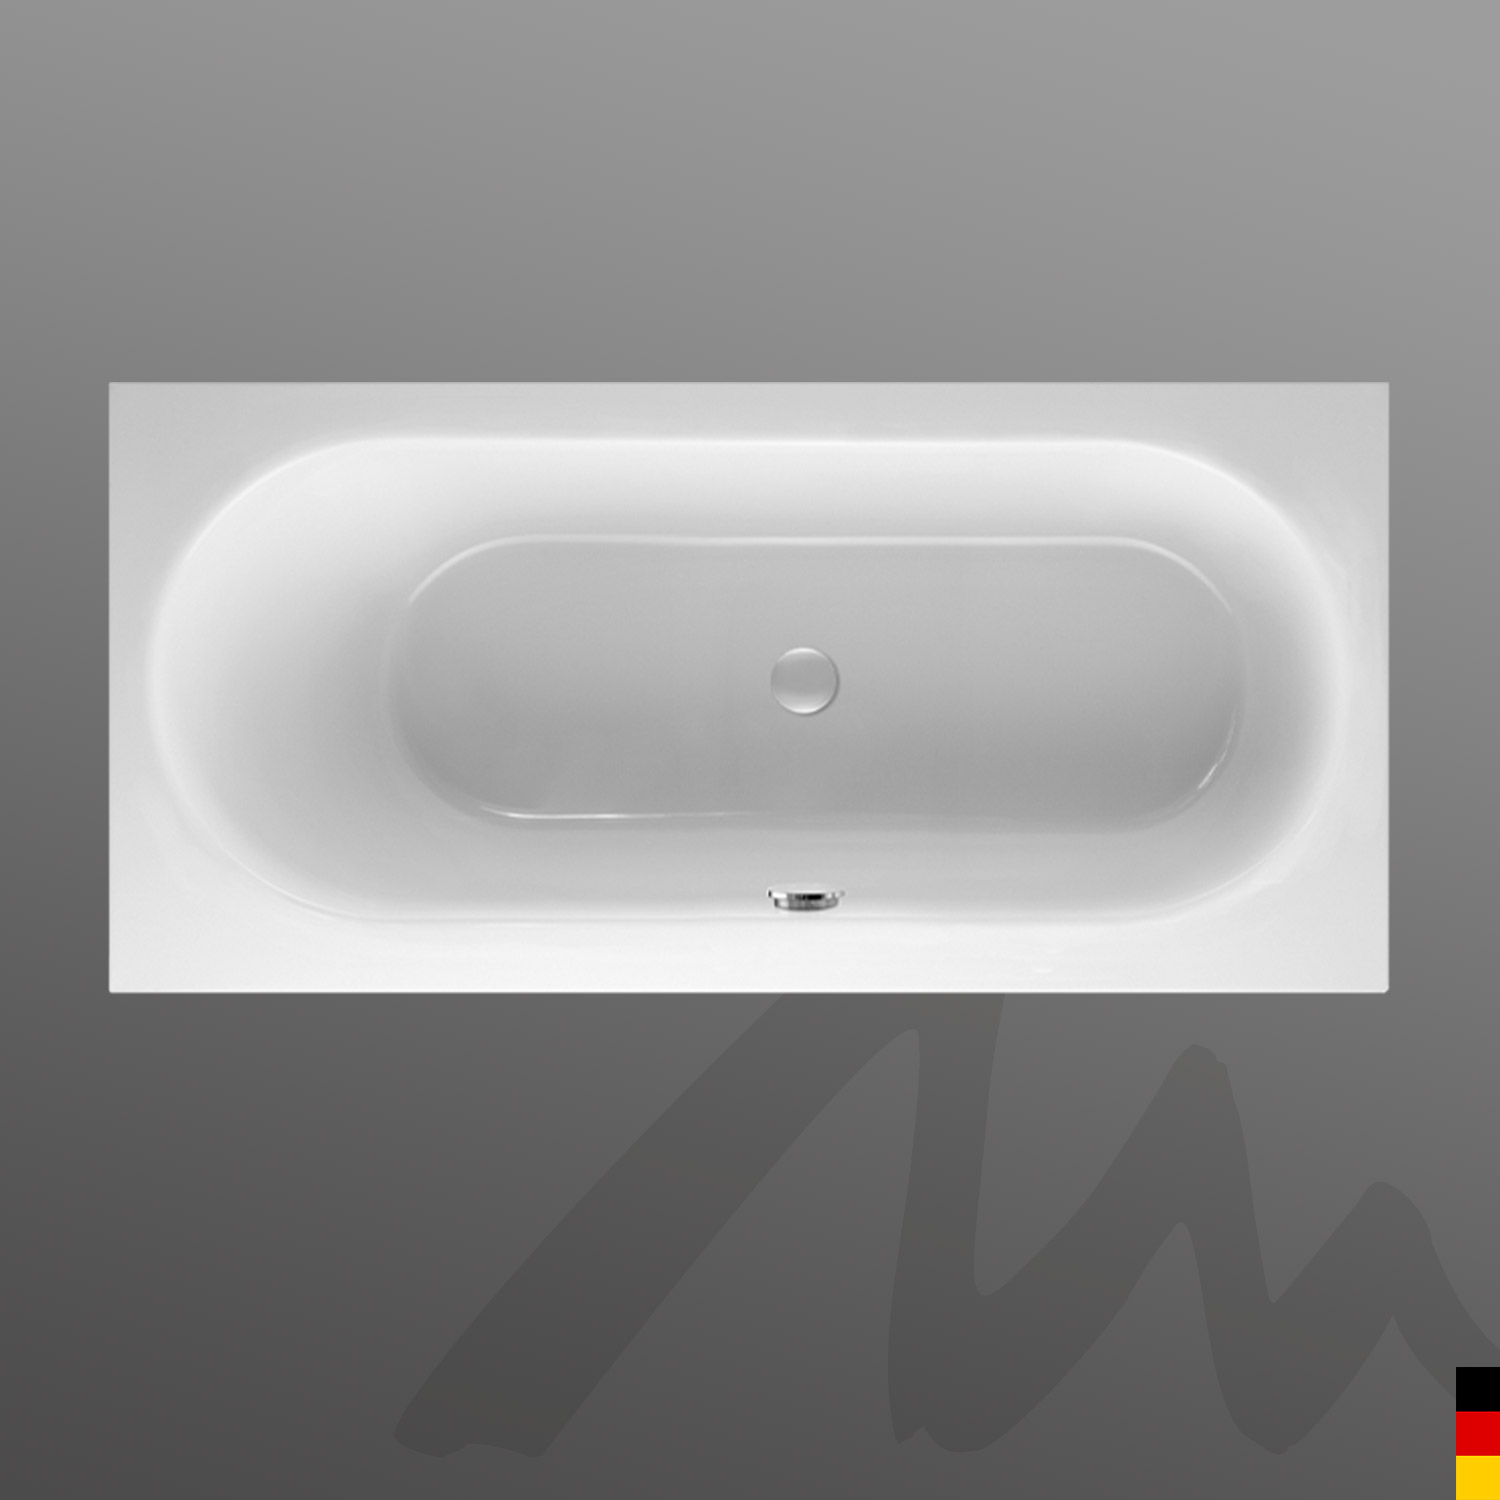 Mauersberger Badewanne Rechteck Ausana 180/80 uno  180x80x45cm  Farbe:rein-weiß